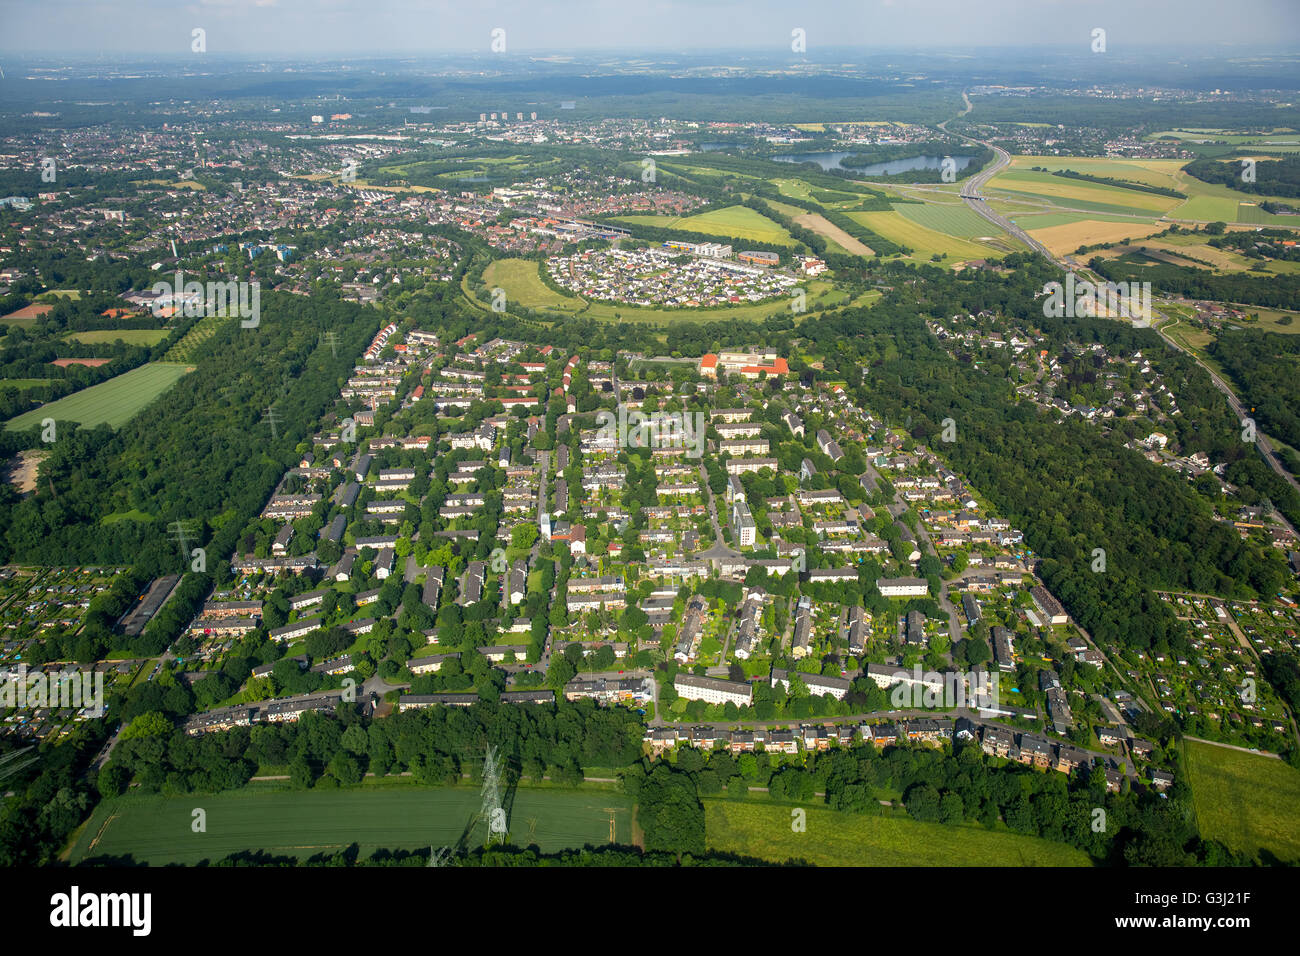 Vista aerea, bidonville a sud di Ingelheim HKM, Duisburg, regione della Ruhr, Renania settentrionale-Vestfalia, Germania, Europa, vista aerea, Foto Stock